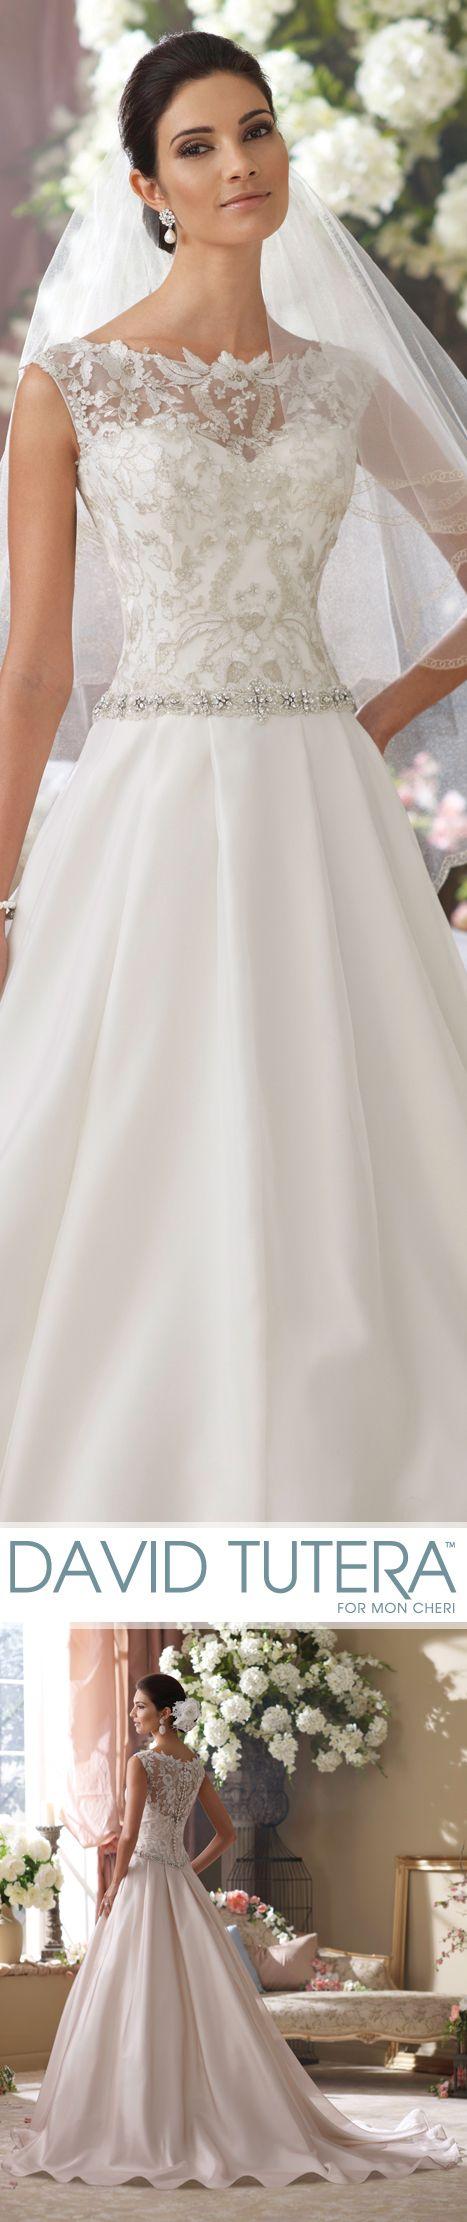 Hochzeit - Wedding Dresses Only:)!